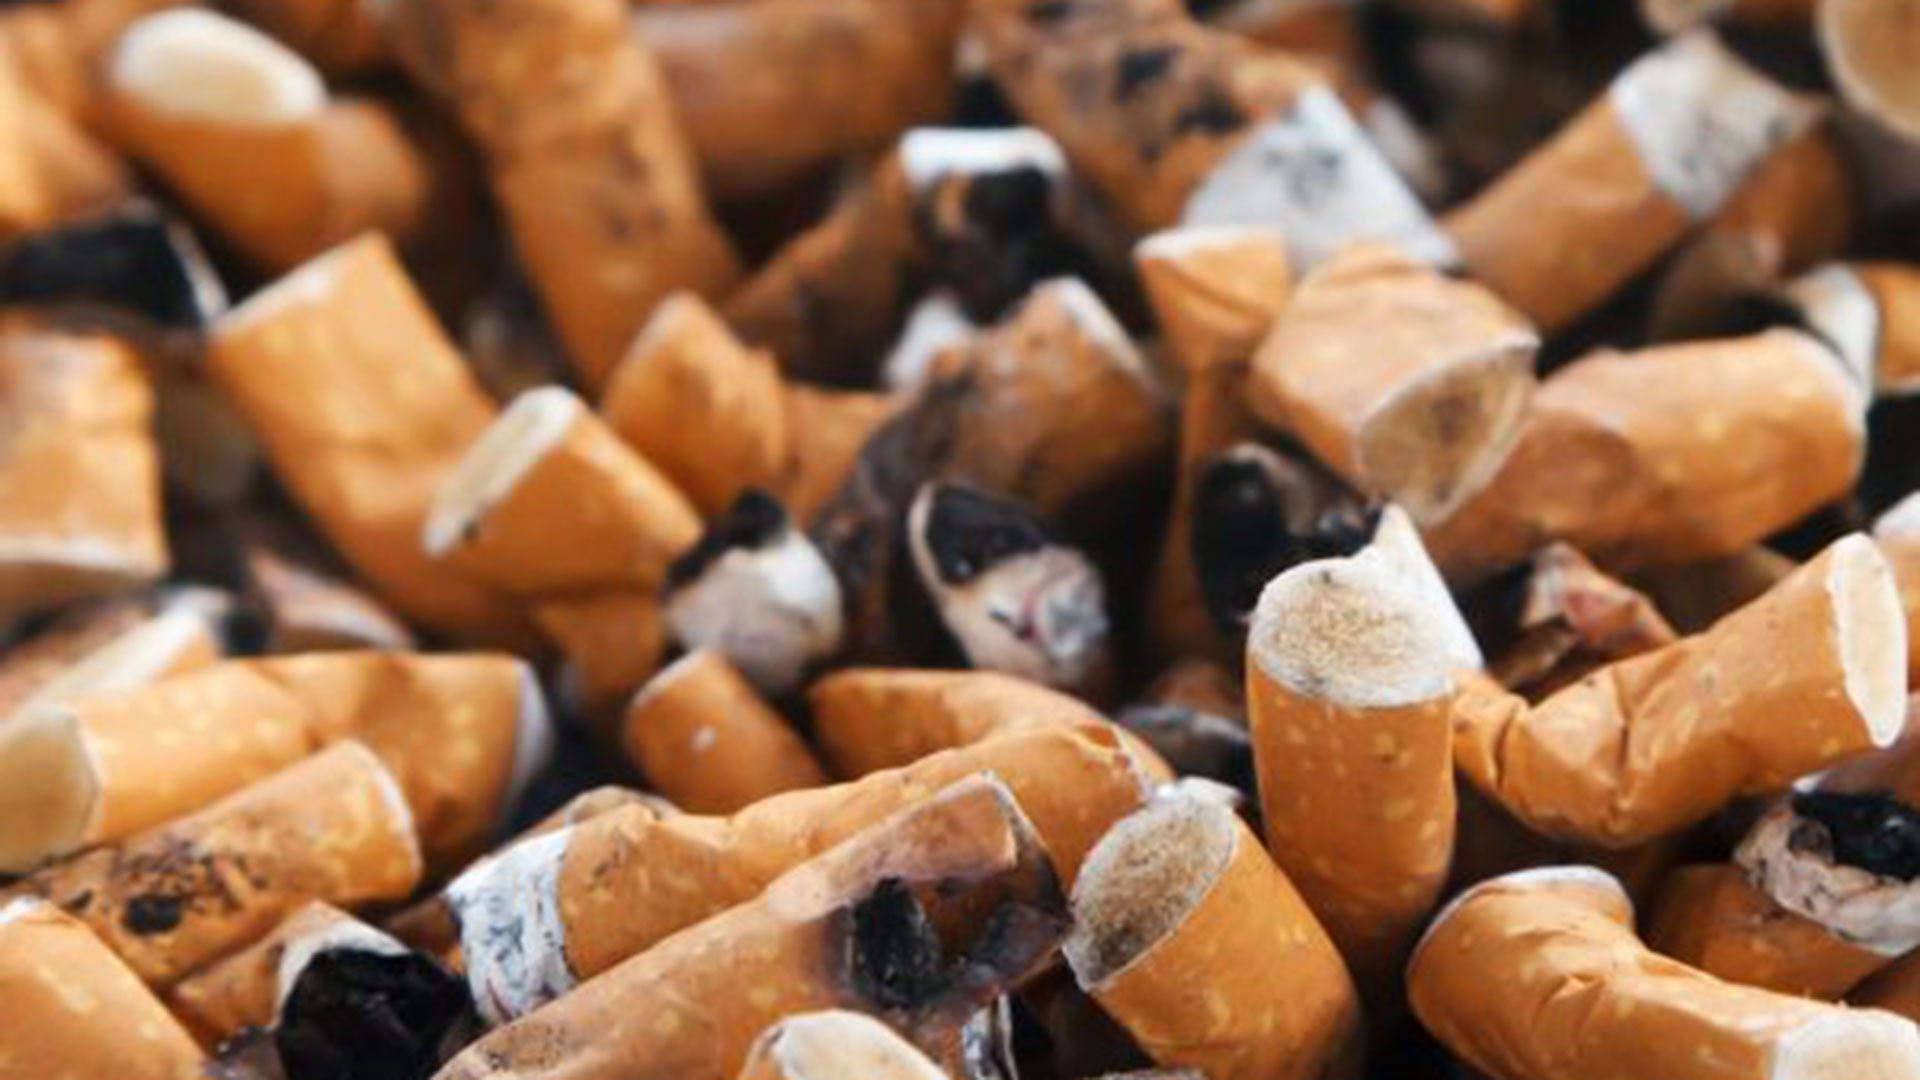 Se calcula que los fumadores desechan entre 4,5 y 5,6 billones de colillas por año, es decir 18 mil millones por día